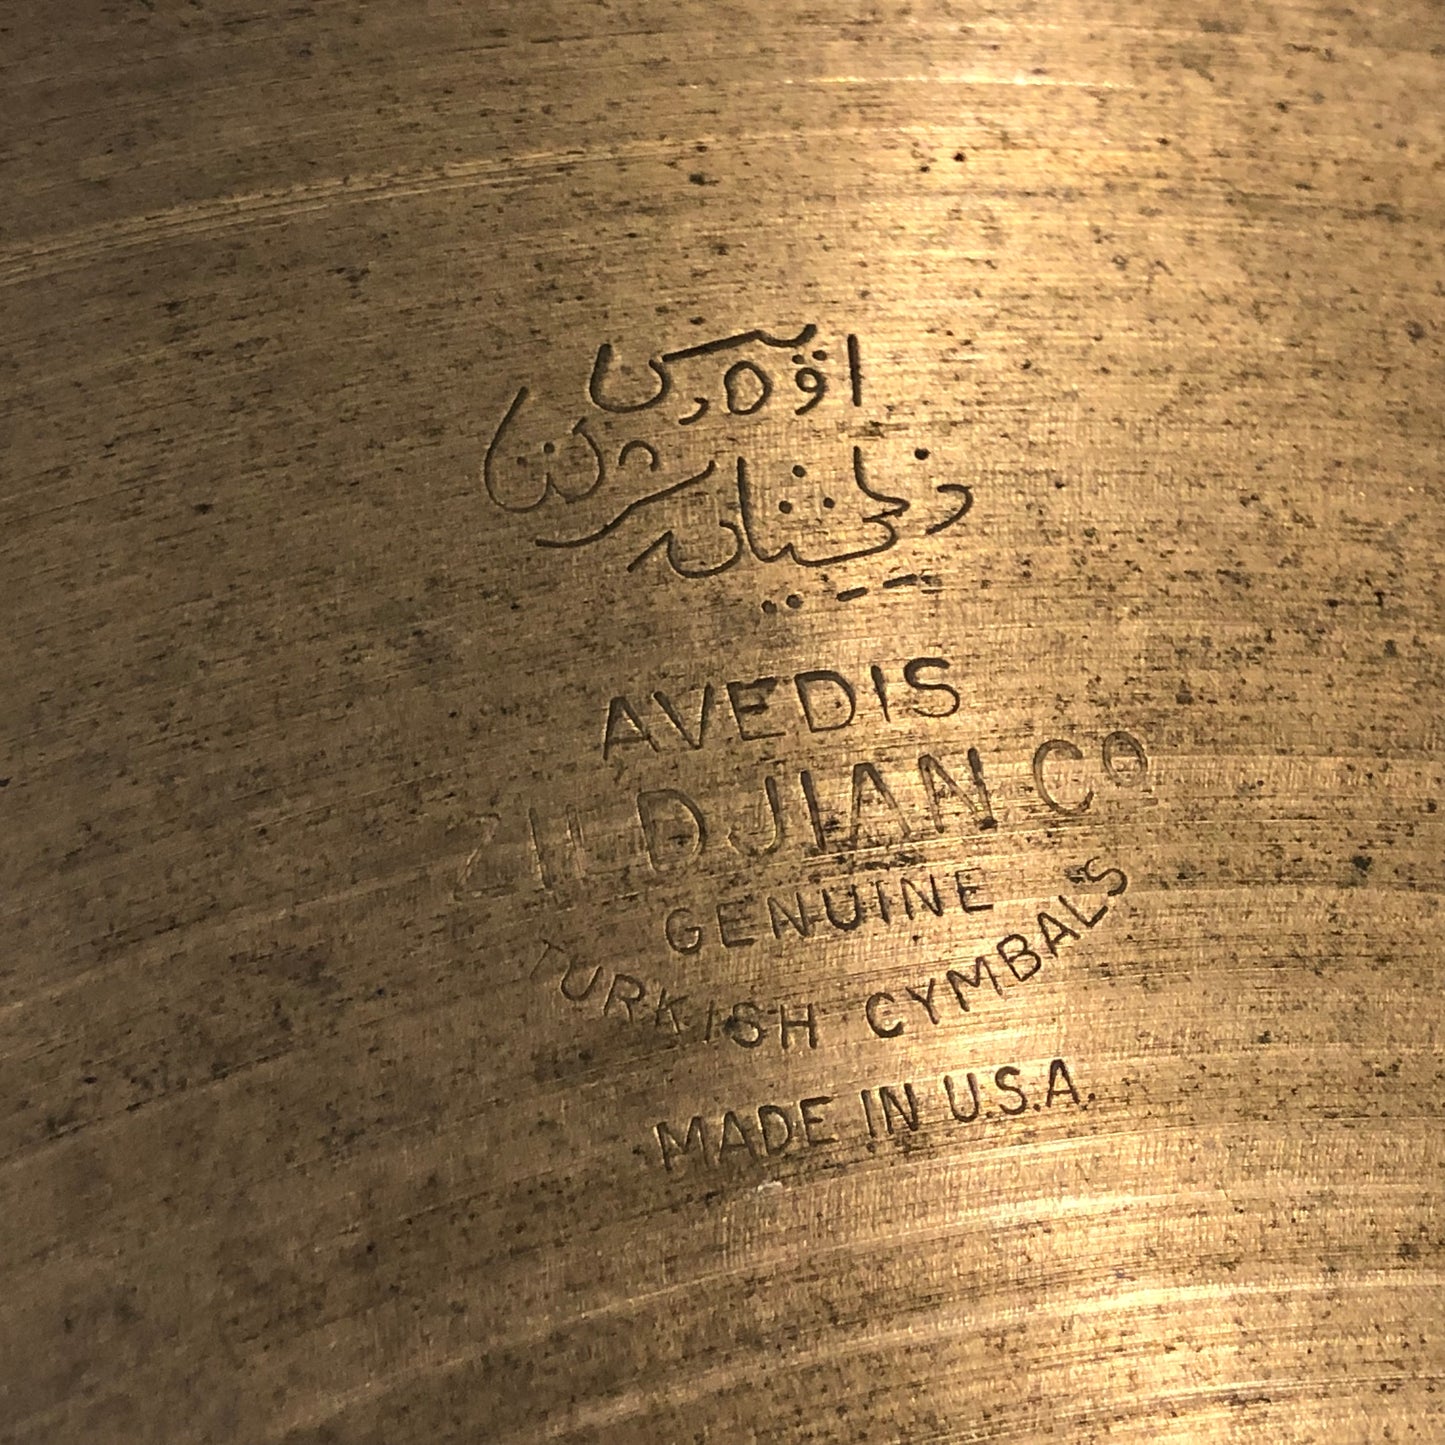 14" Zildjian A 1960s Hi-Hat Single Cymbal 780g #752